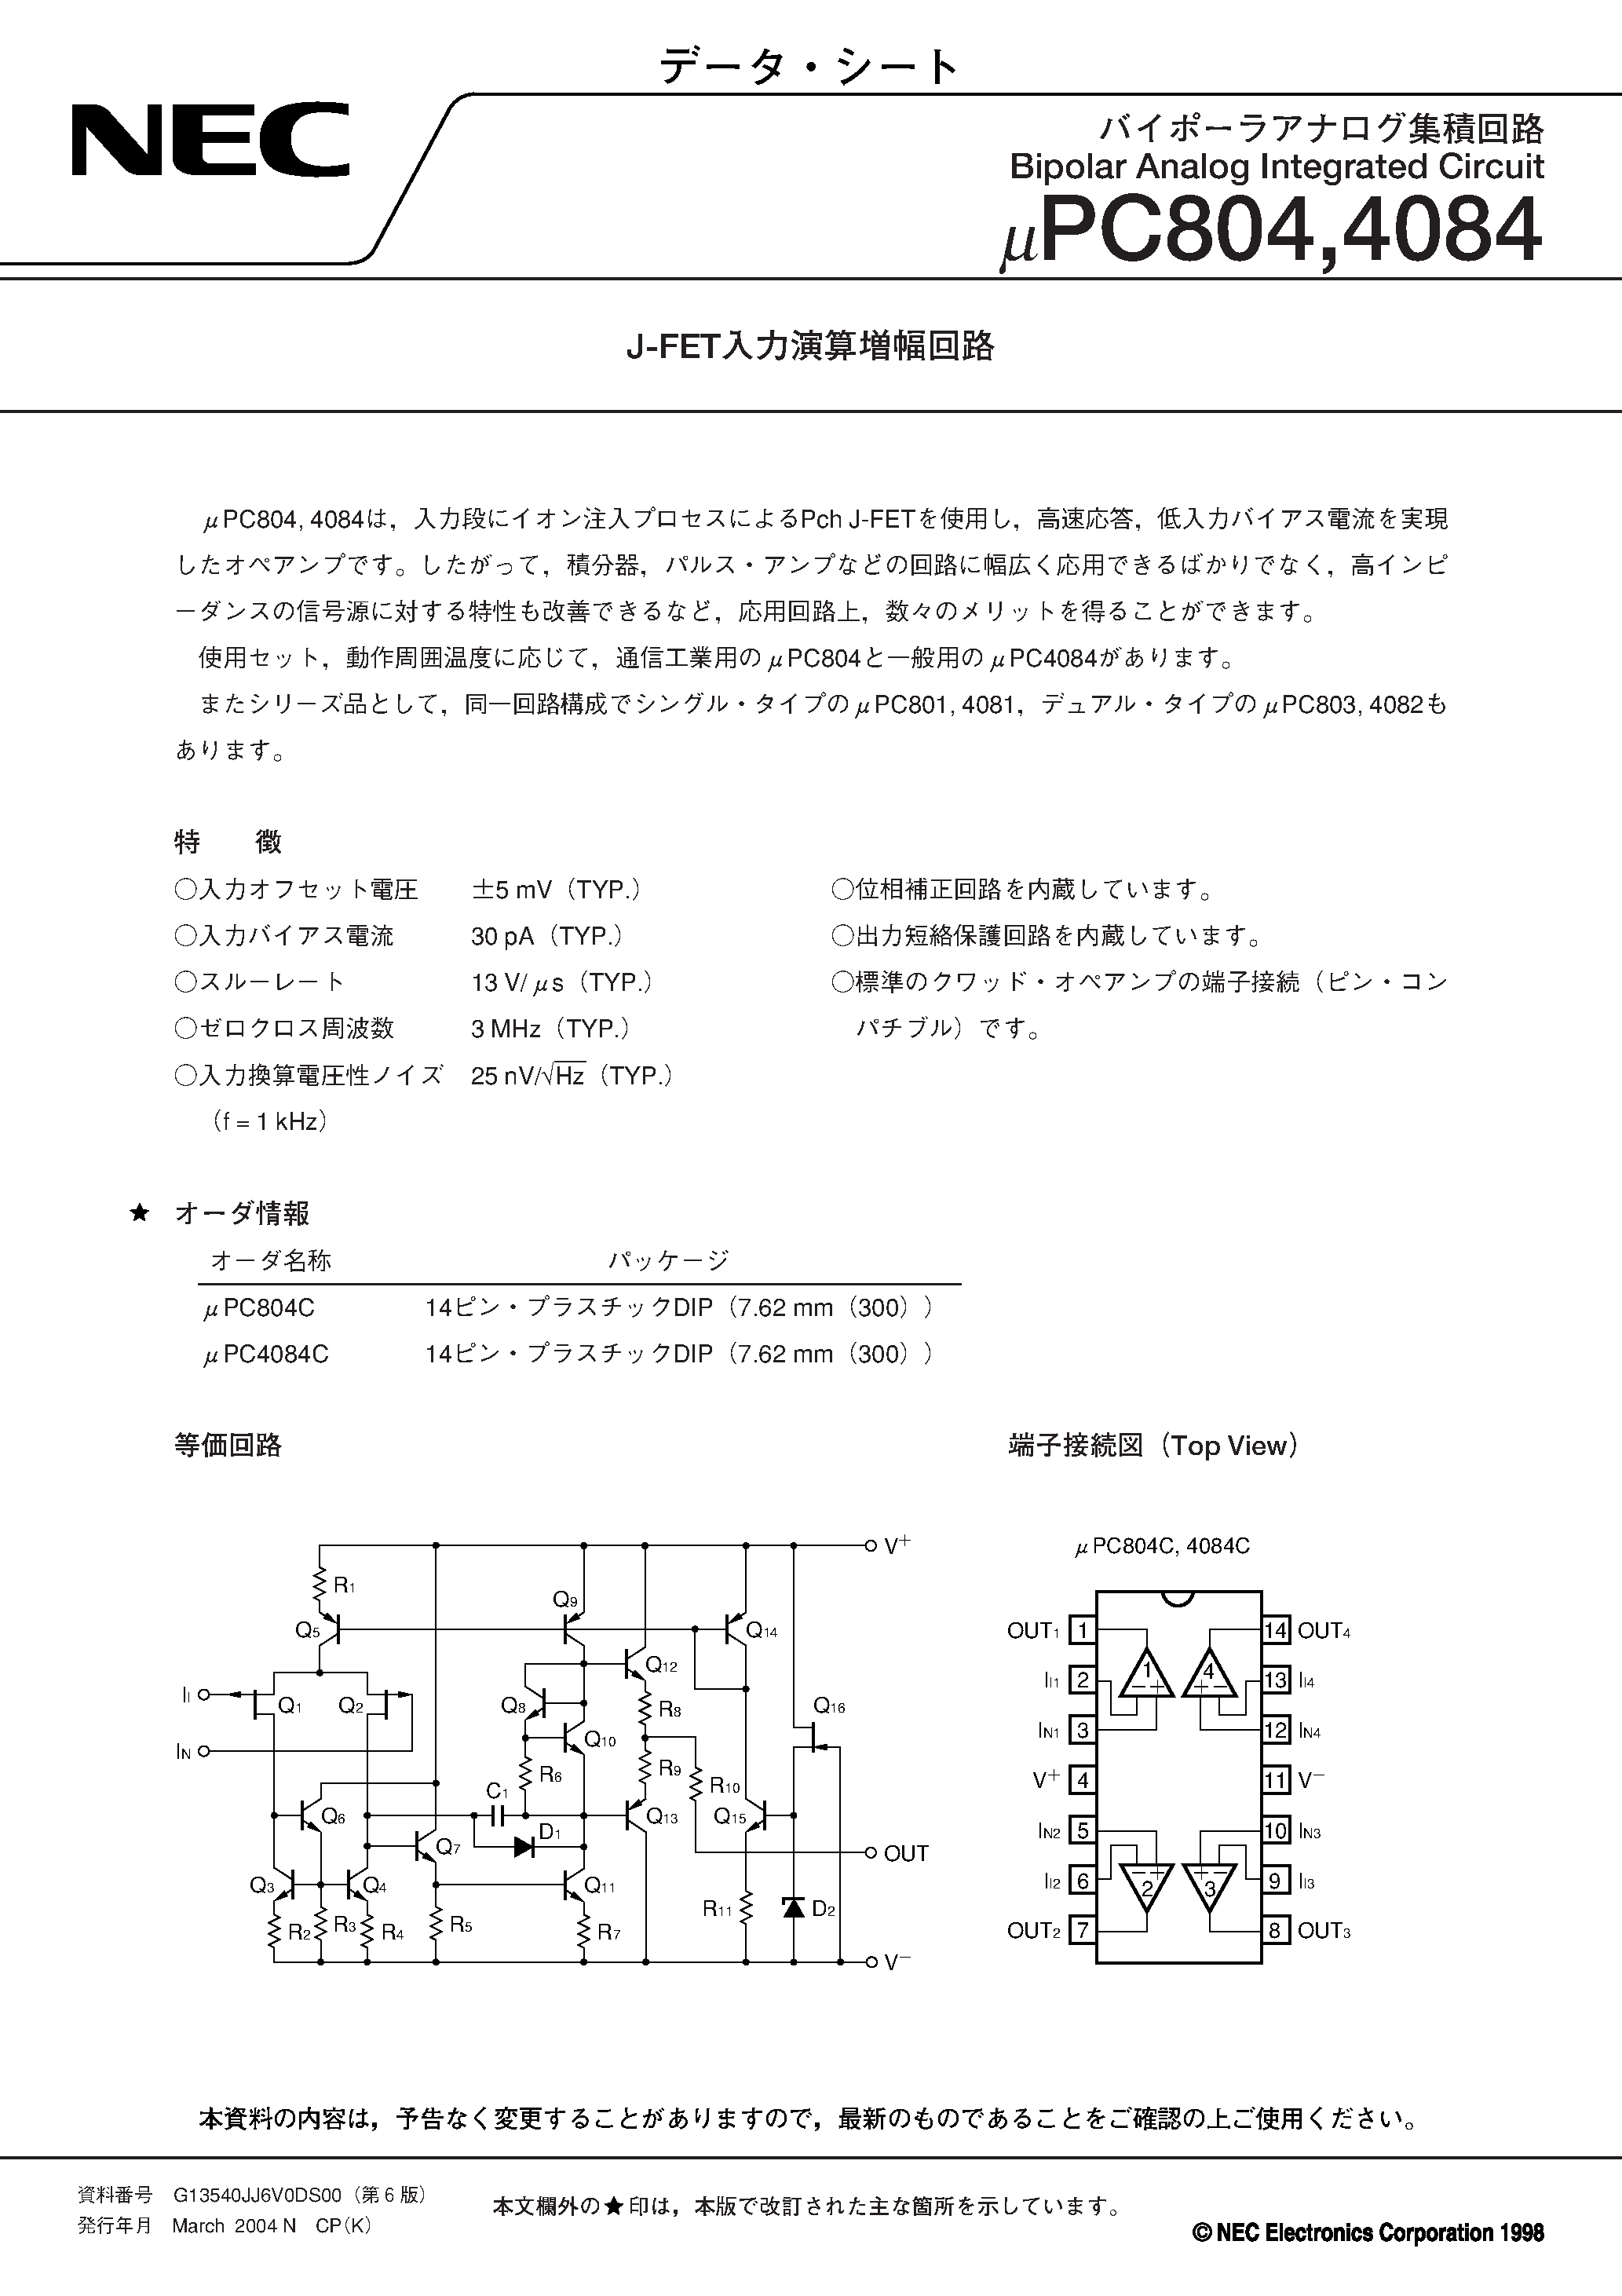 Datasheet uPC804 - J-FET Bipolar Analog Integrated Circuit page 1